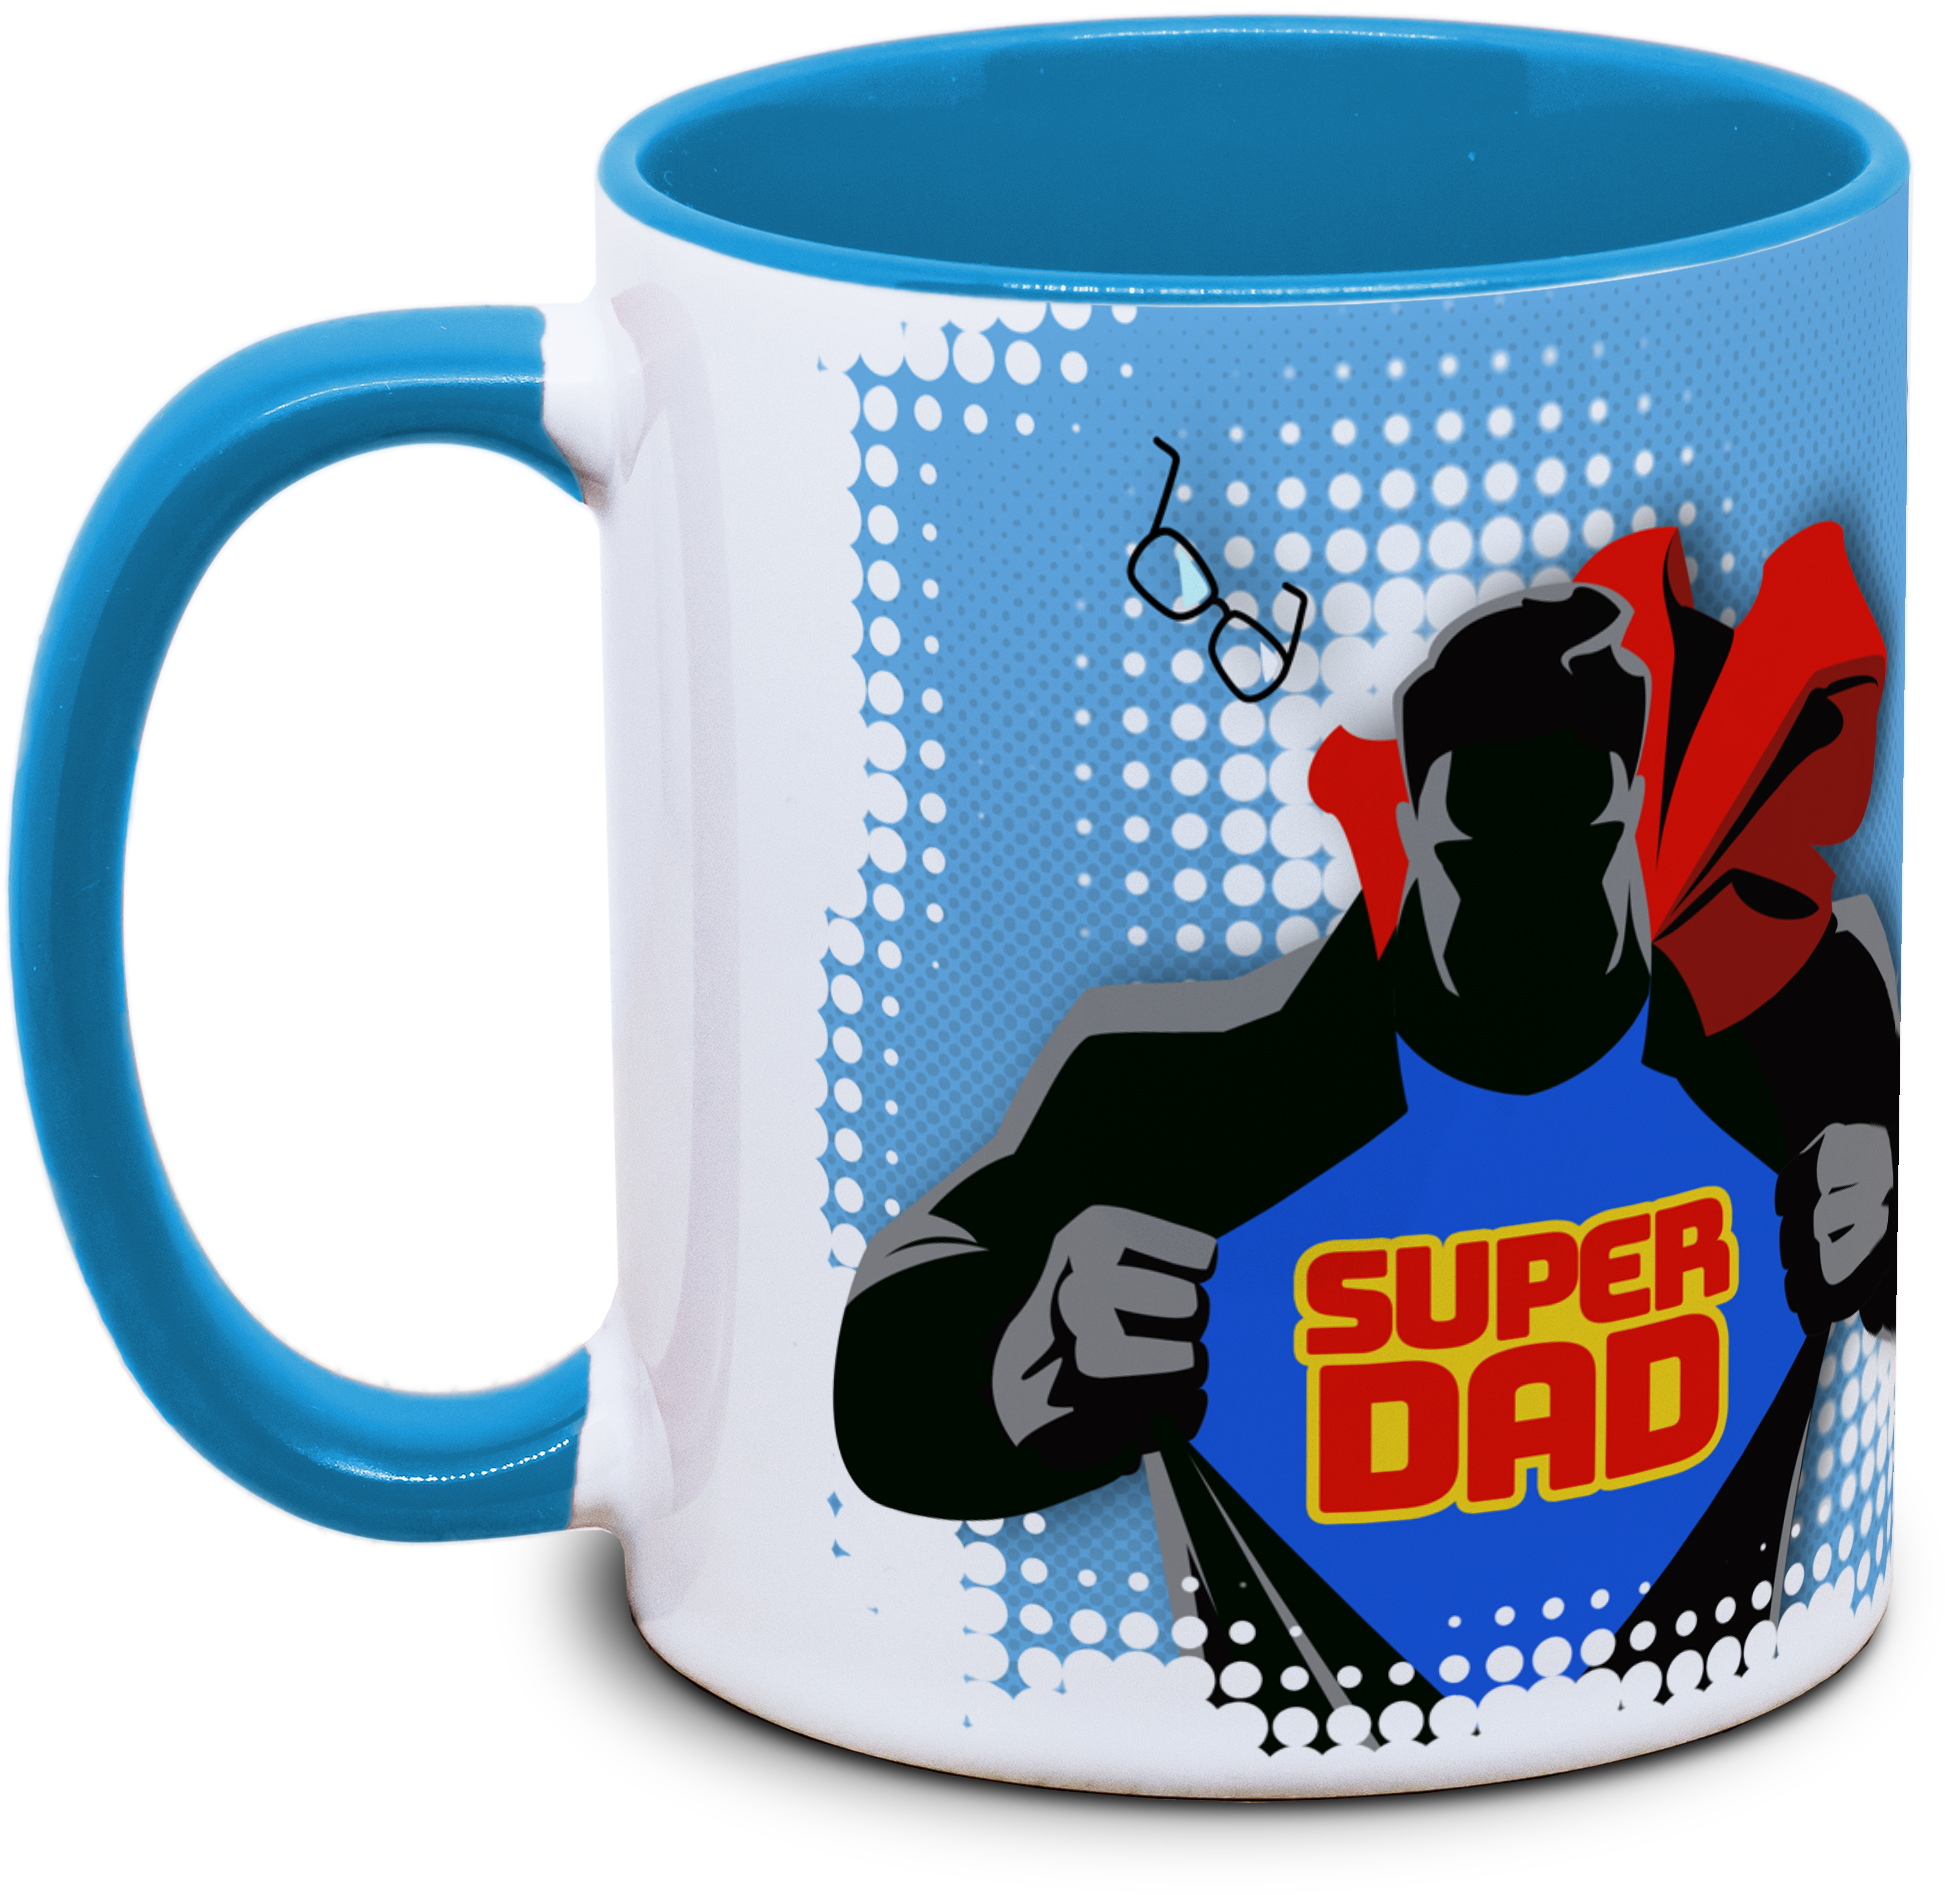 Papa - Du bist mein Superhero! (Superdad)